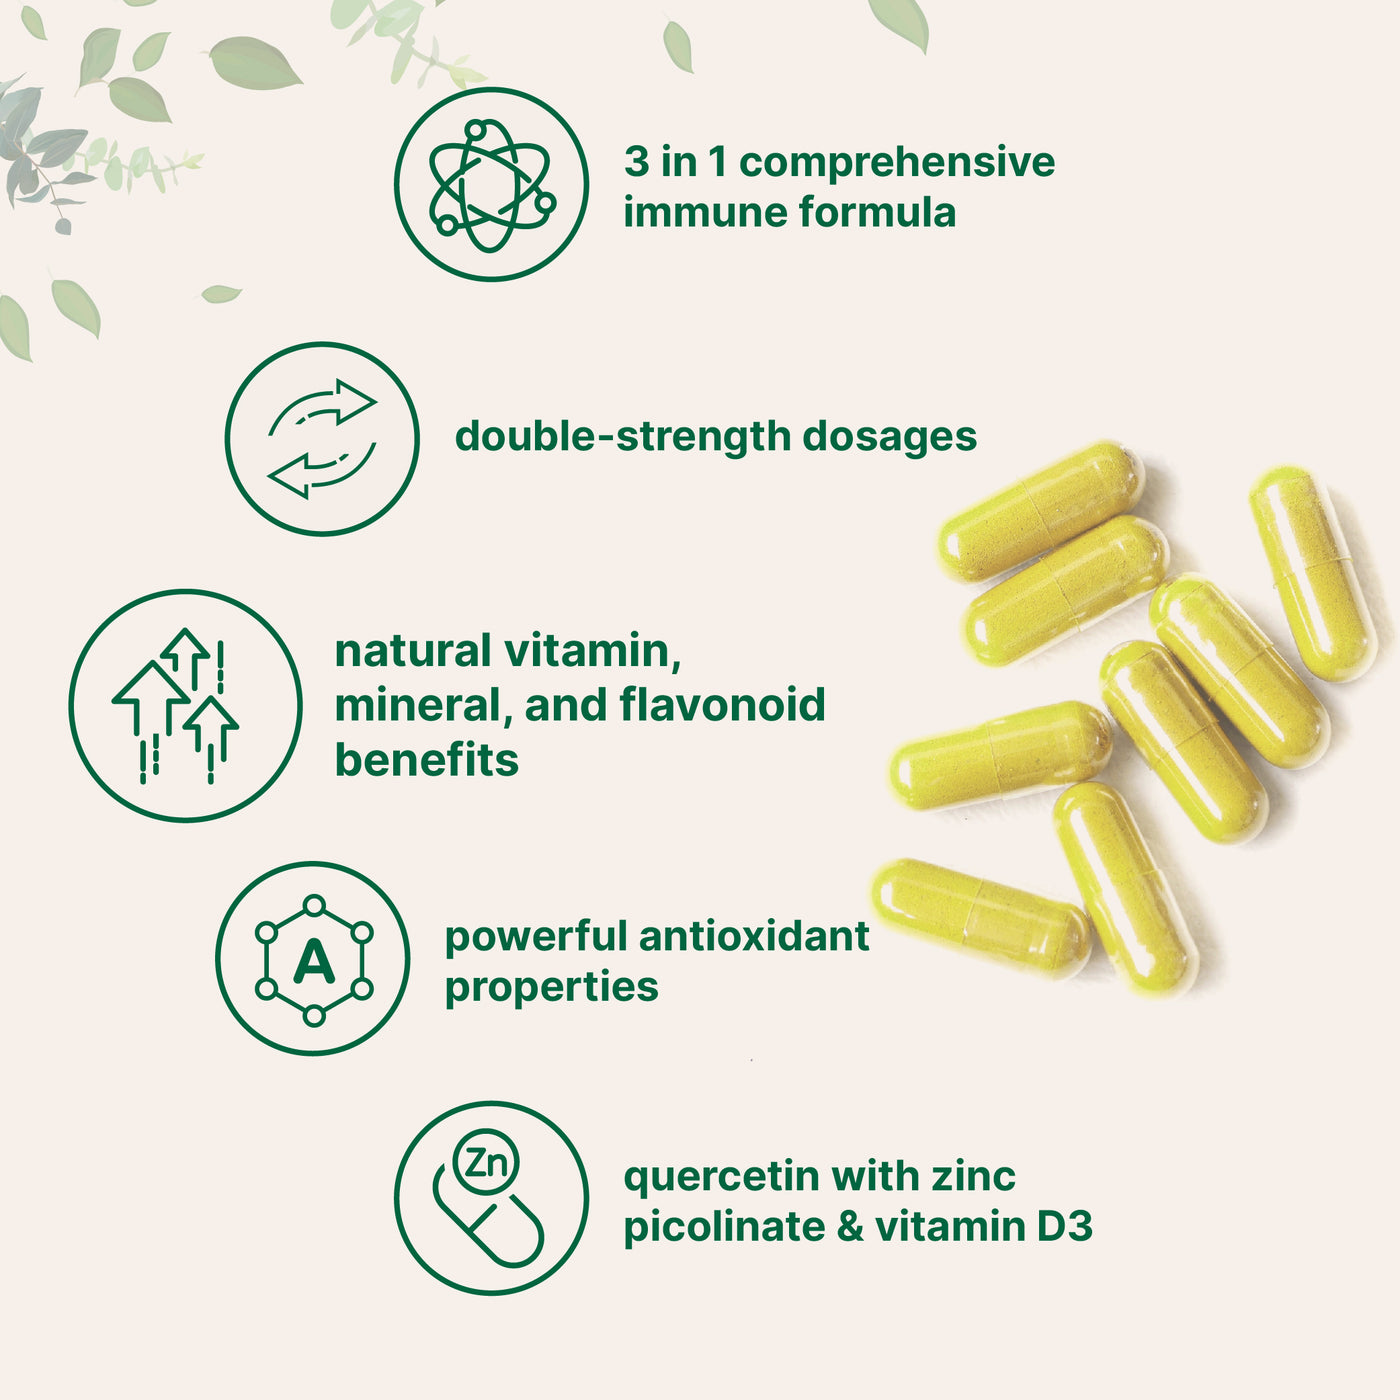 Quercetin Supplements with Zinc & Vitamin D3